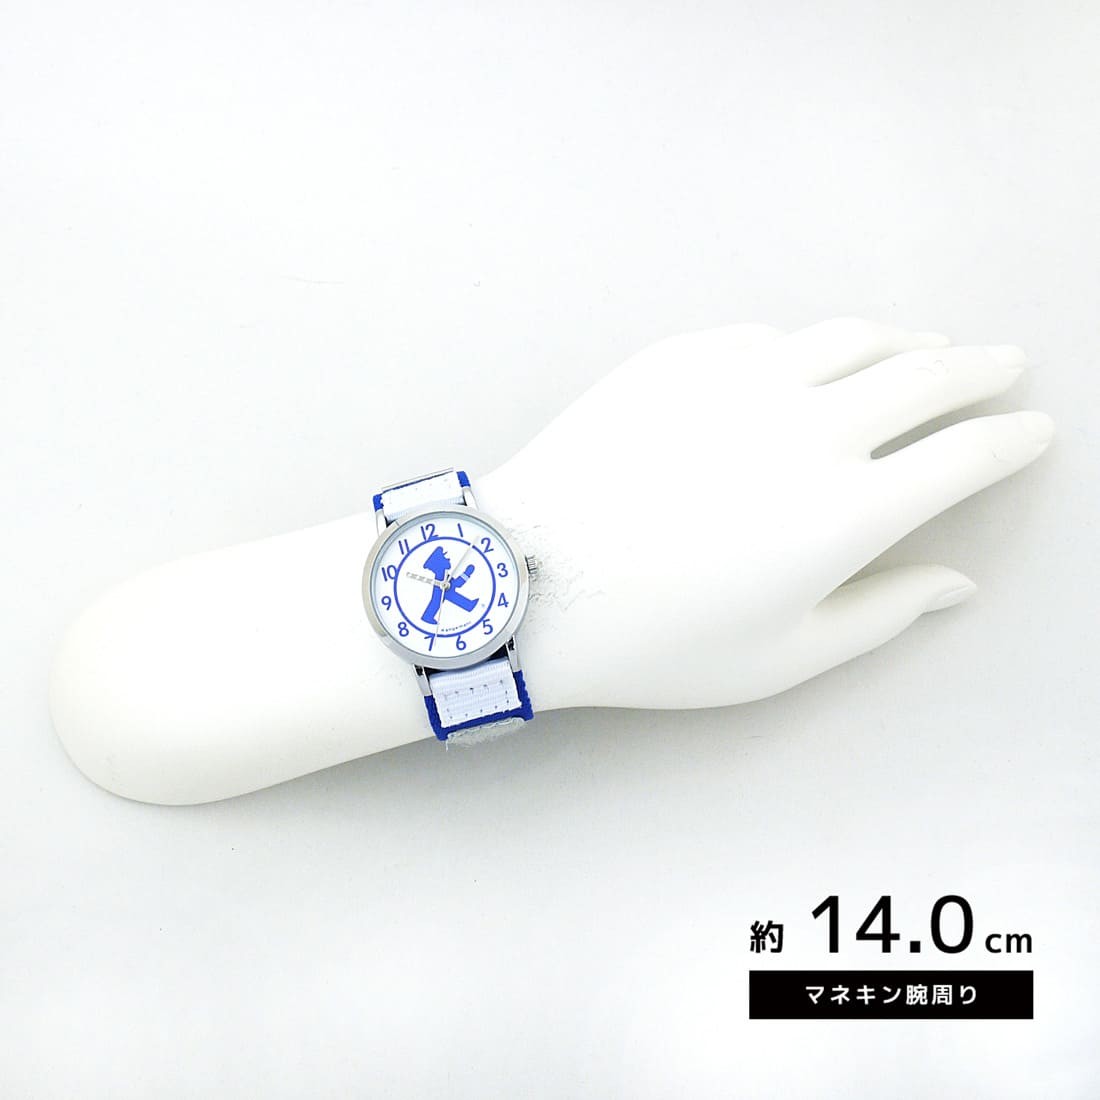 正規品 AMPELMANN アンペルマン パイロットアンペルマン 子供用 キッズ時計 腕時計 メール便 送料無料 ラッピング有料 :ANA-2036:腕時計ショップ  newest - 通販 - Yahoo!ショッピング